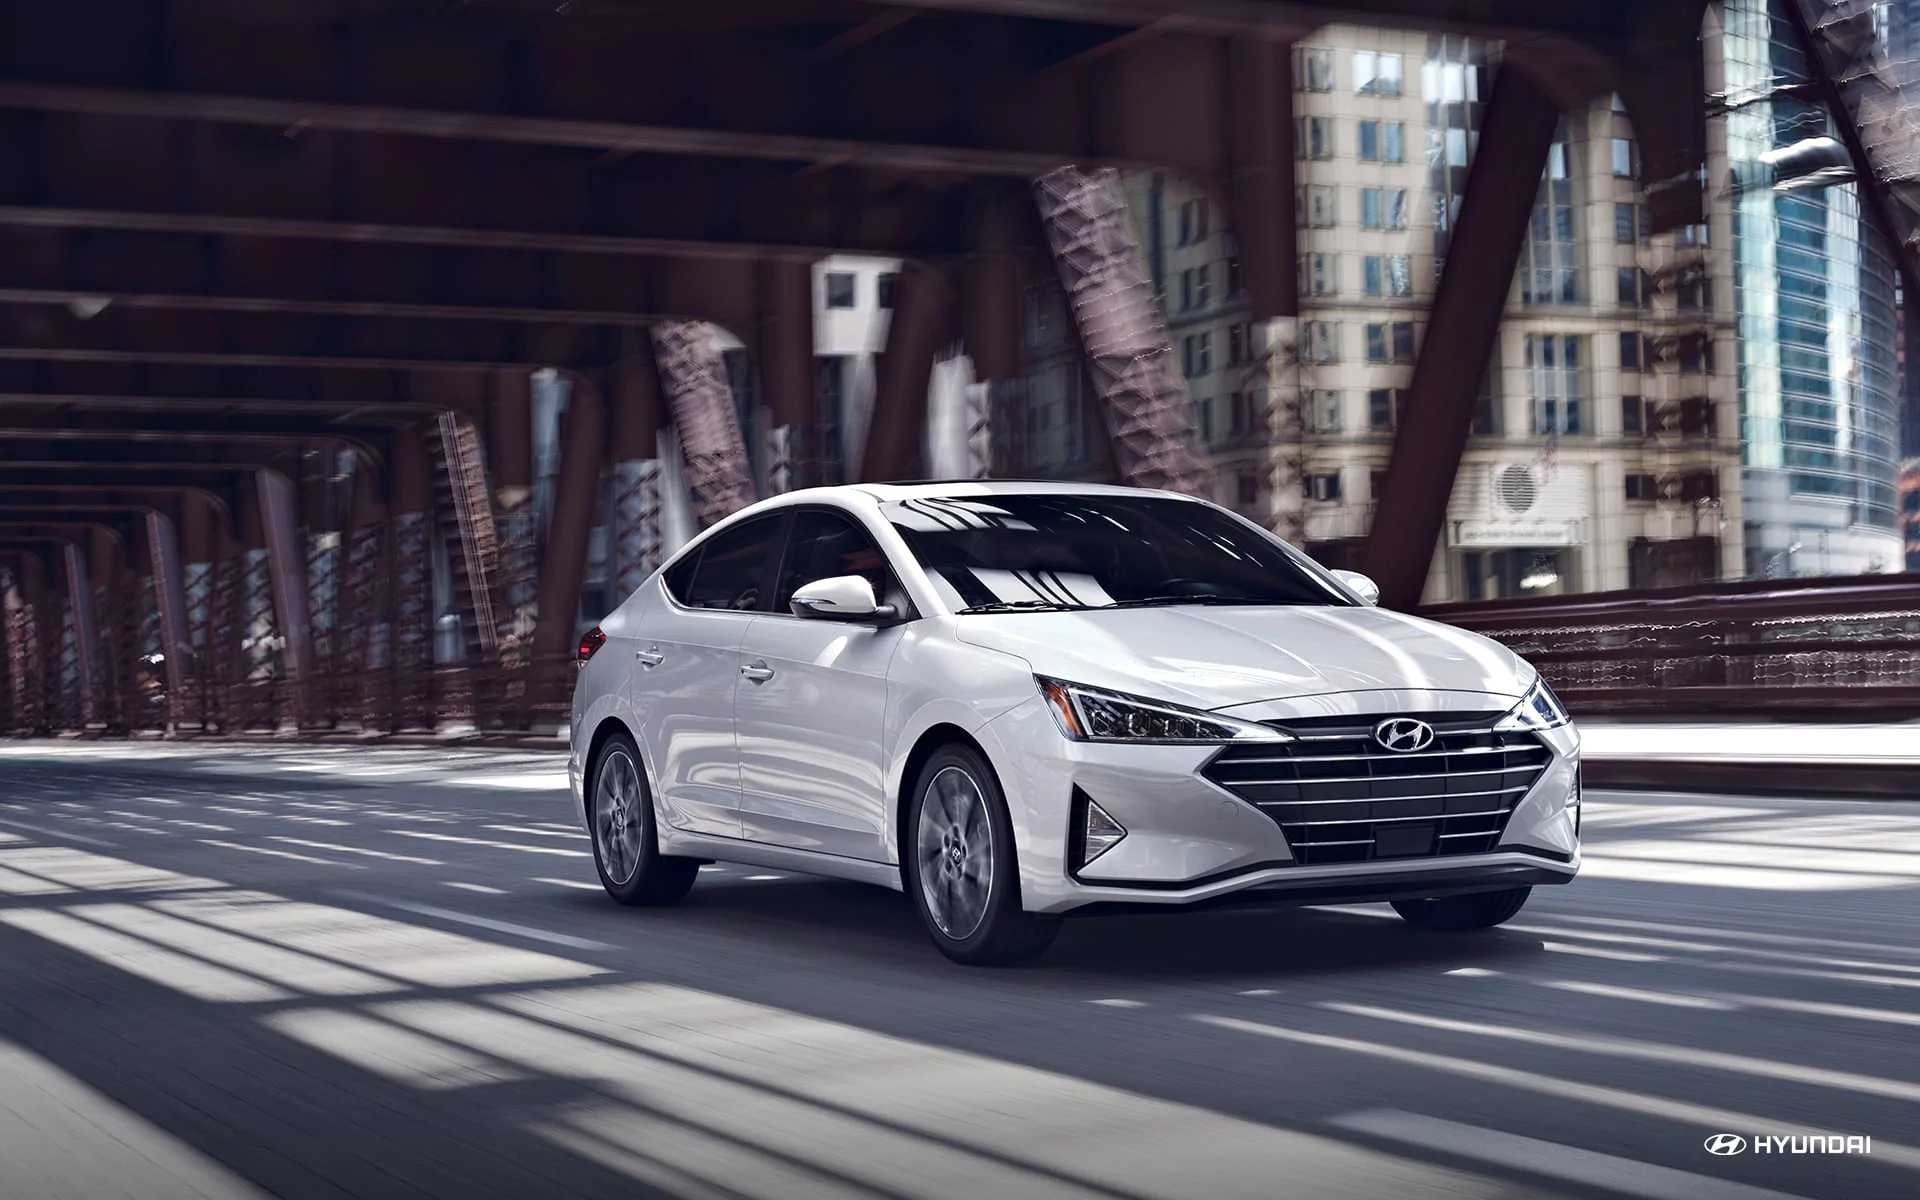 2019 Hyundai Elantra White Exterior Front View